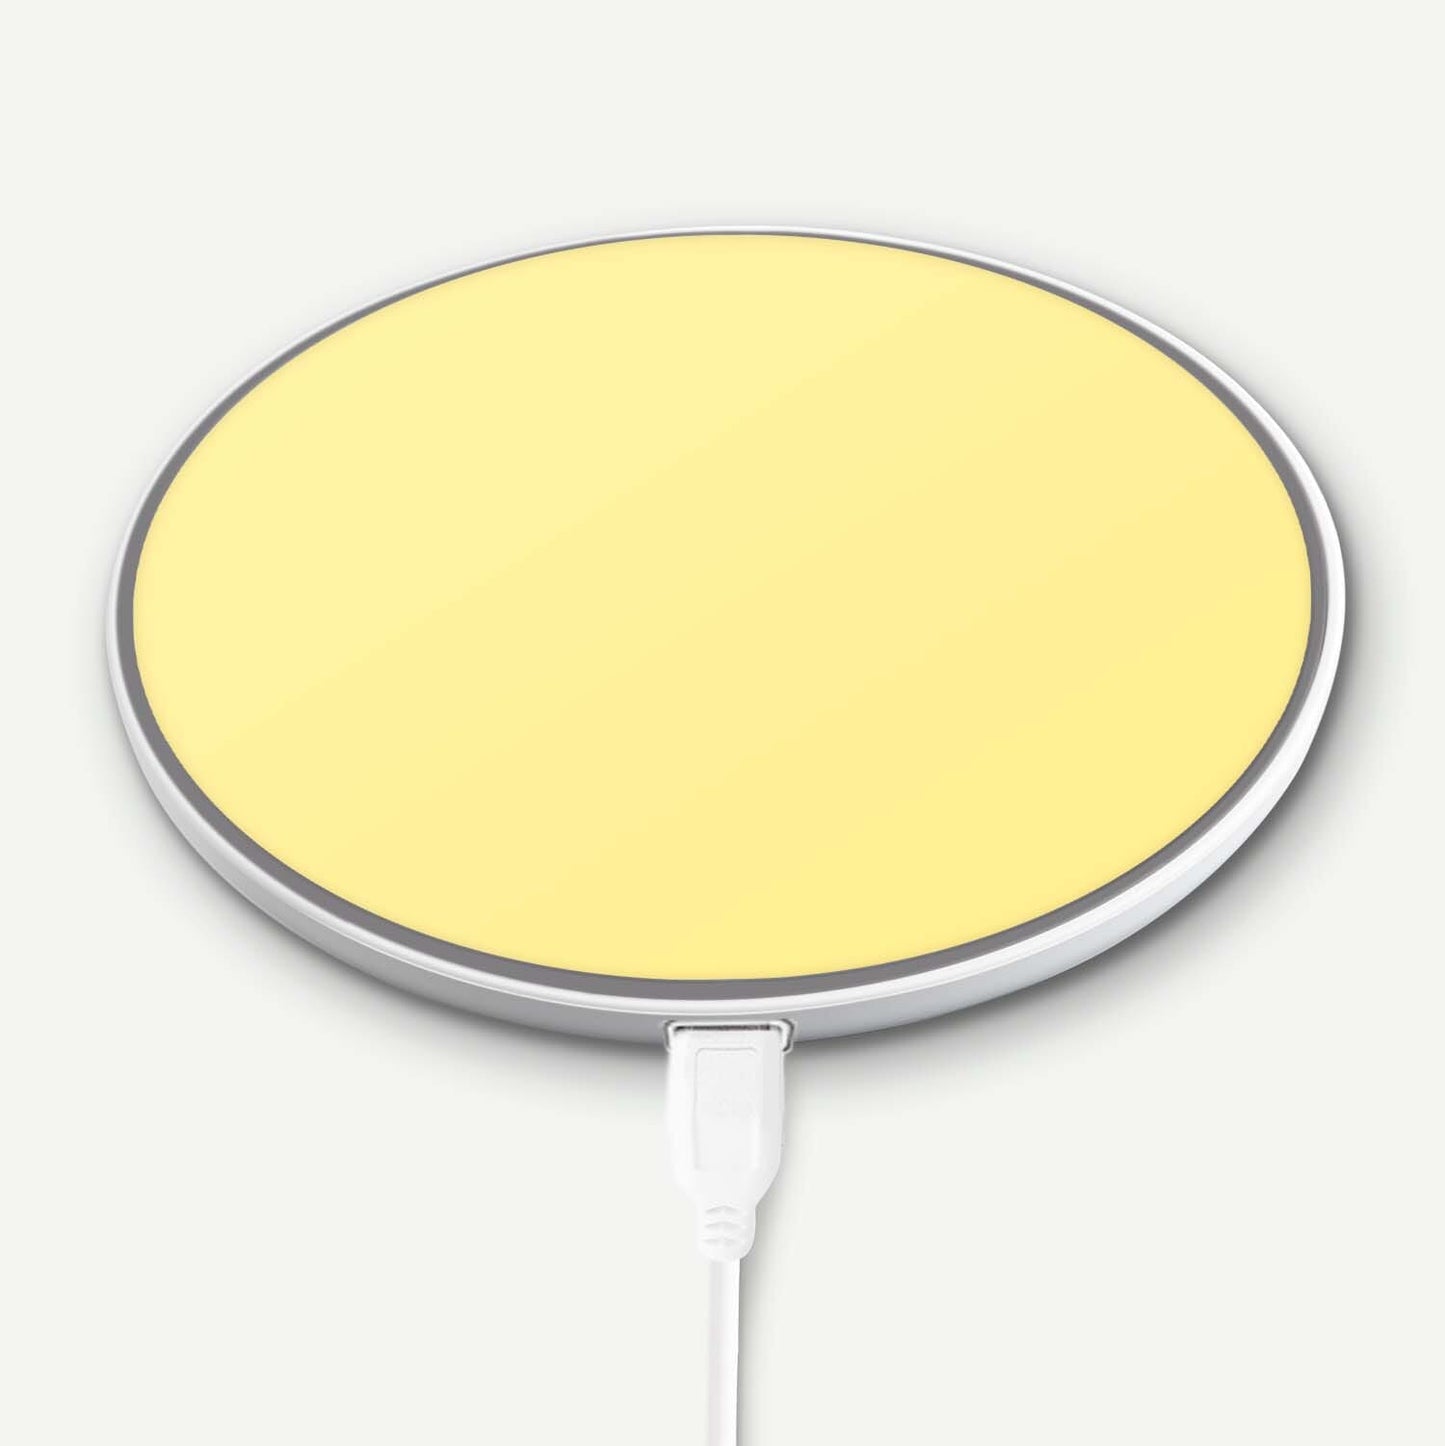 Nitro Wireless Charging Pad - Yellow